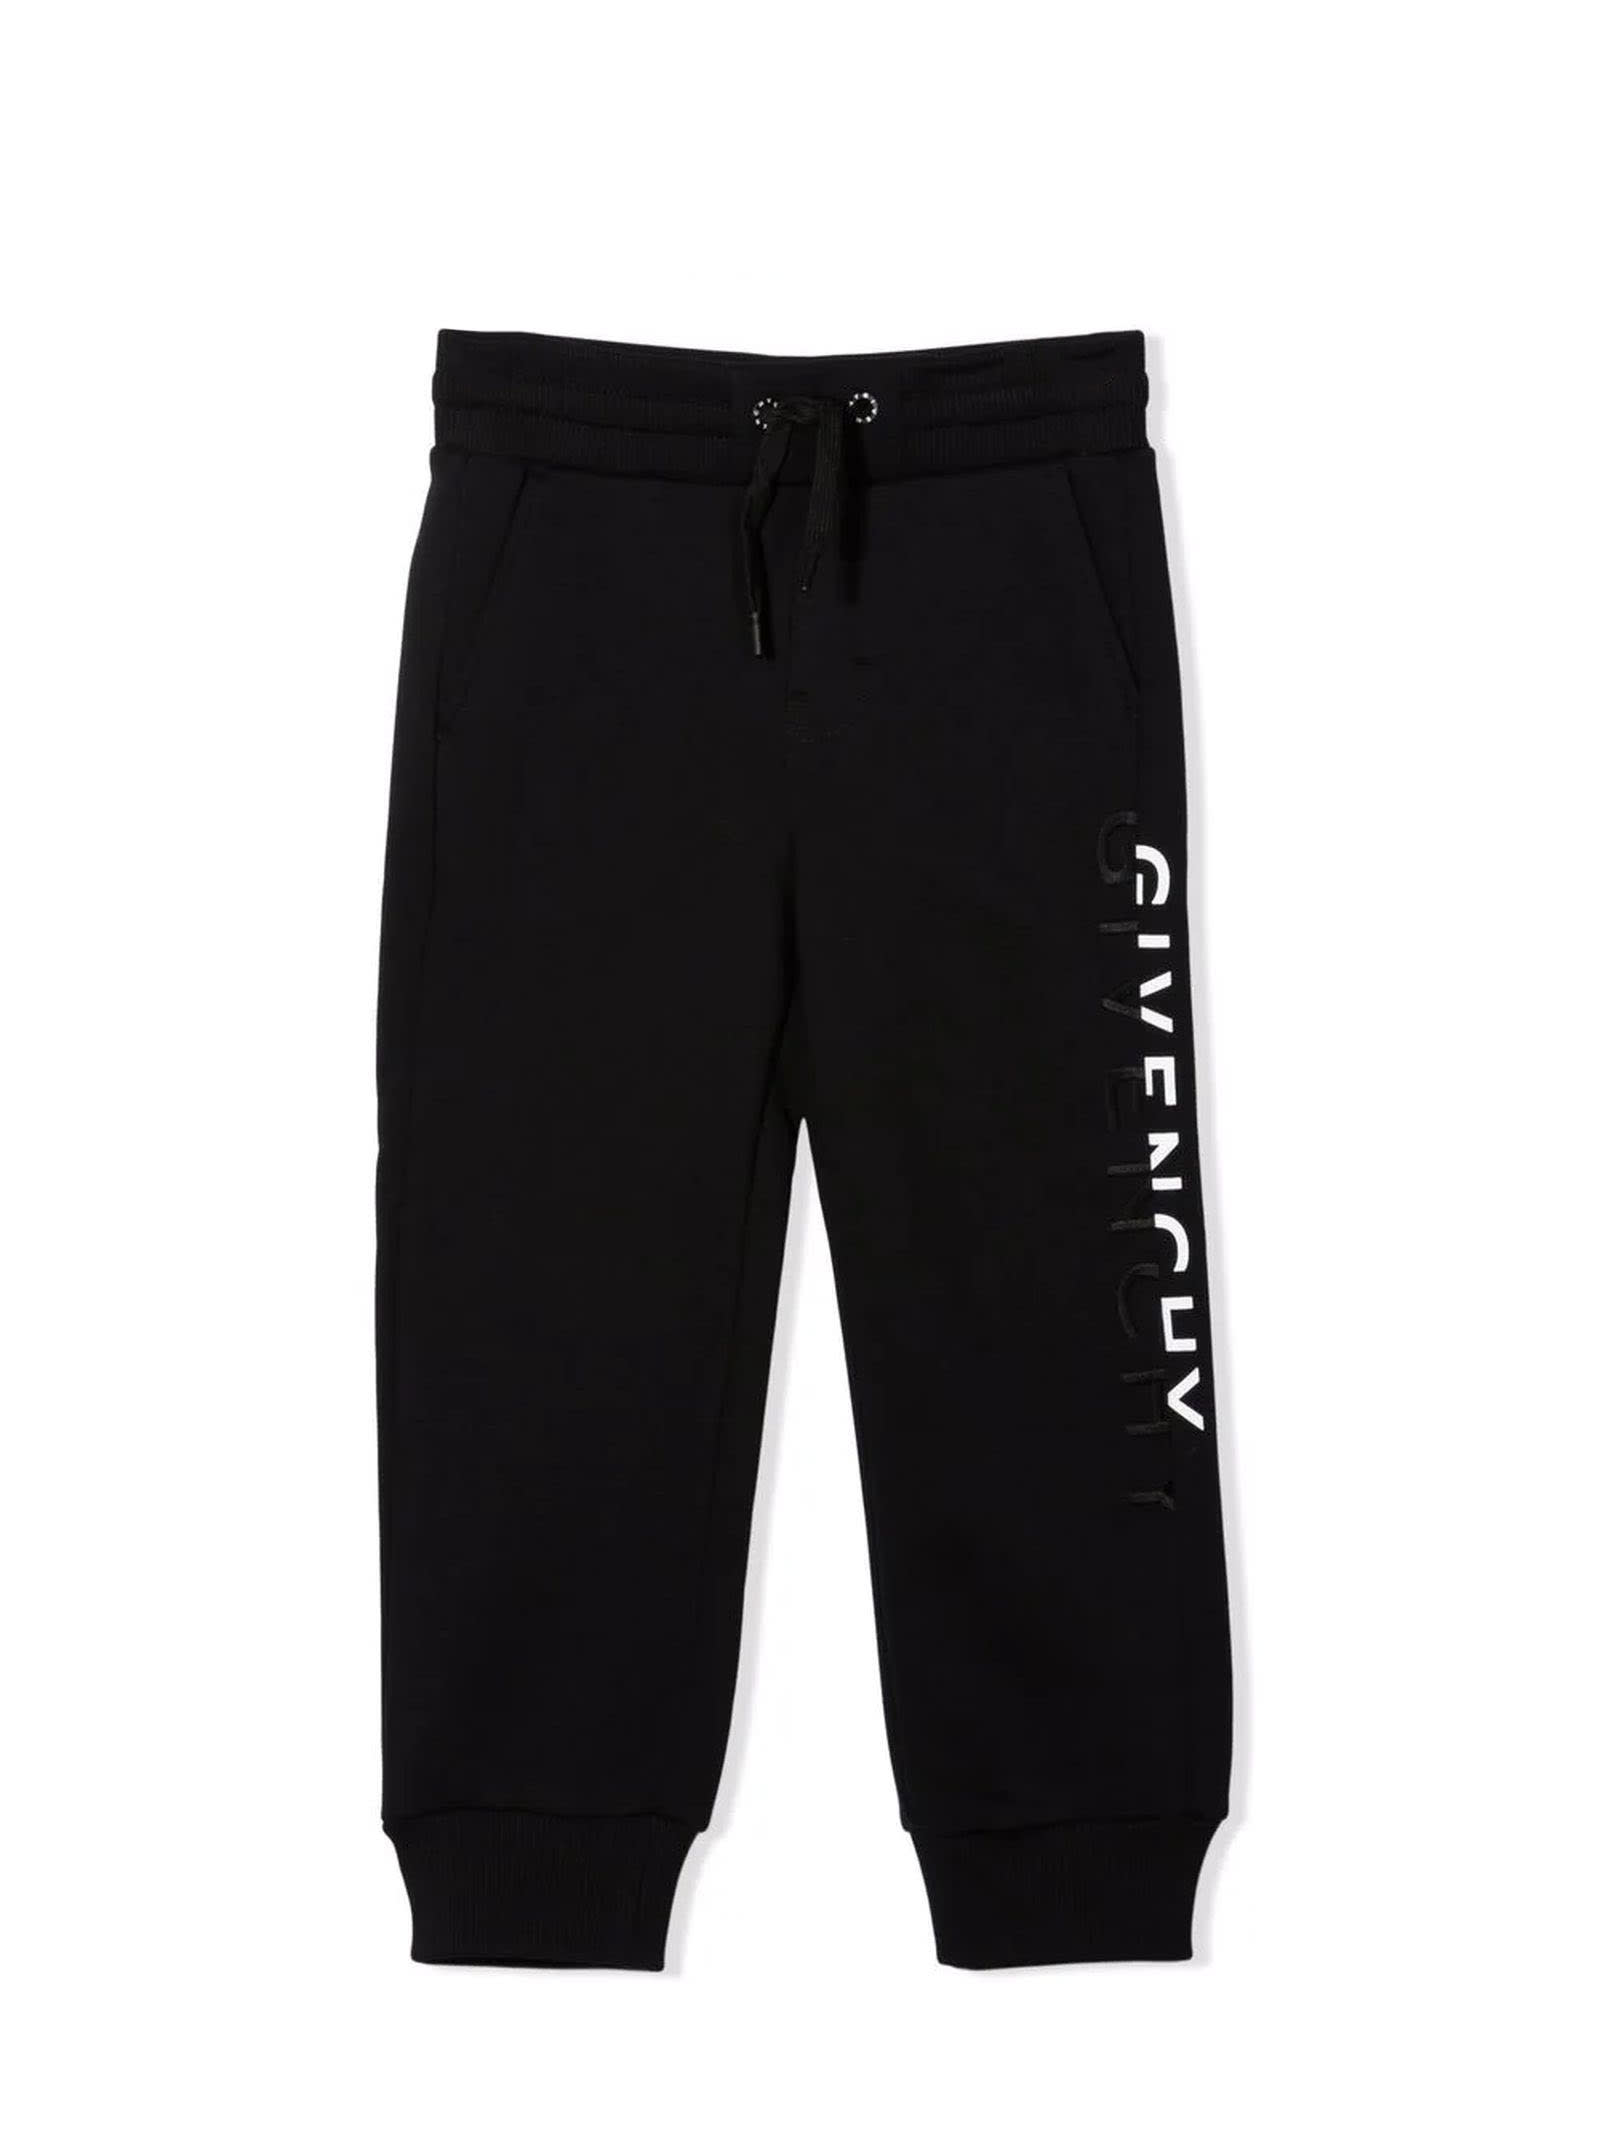 Givenchy Black Cotton-blend Sweatpants